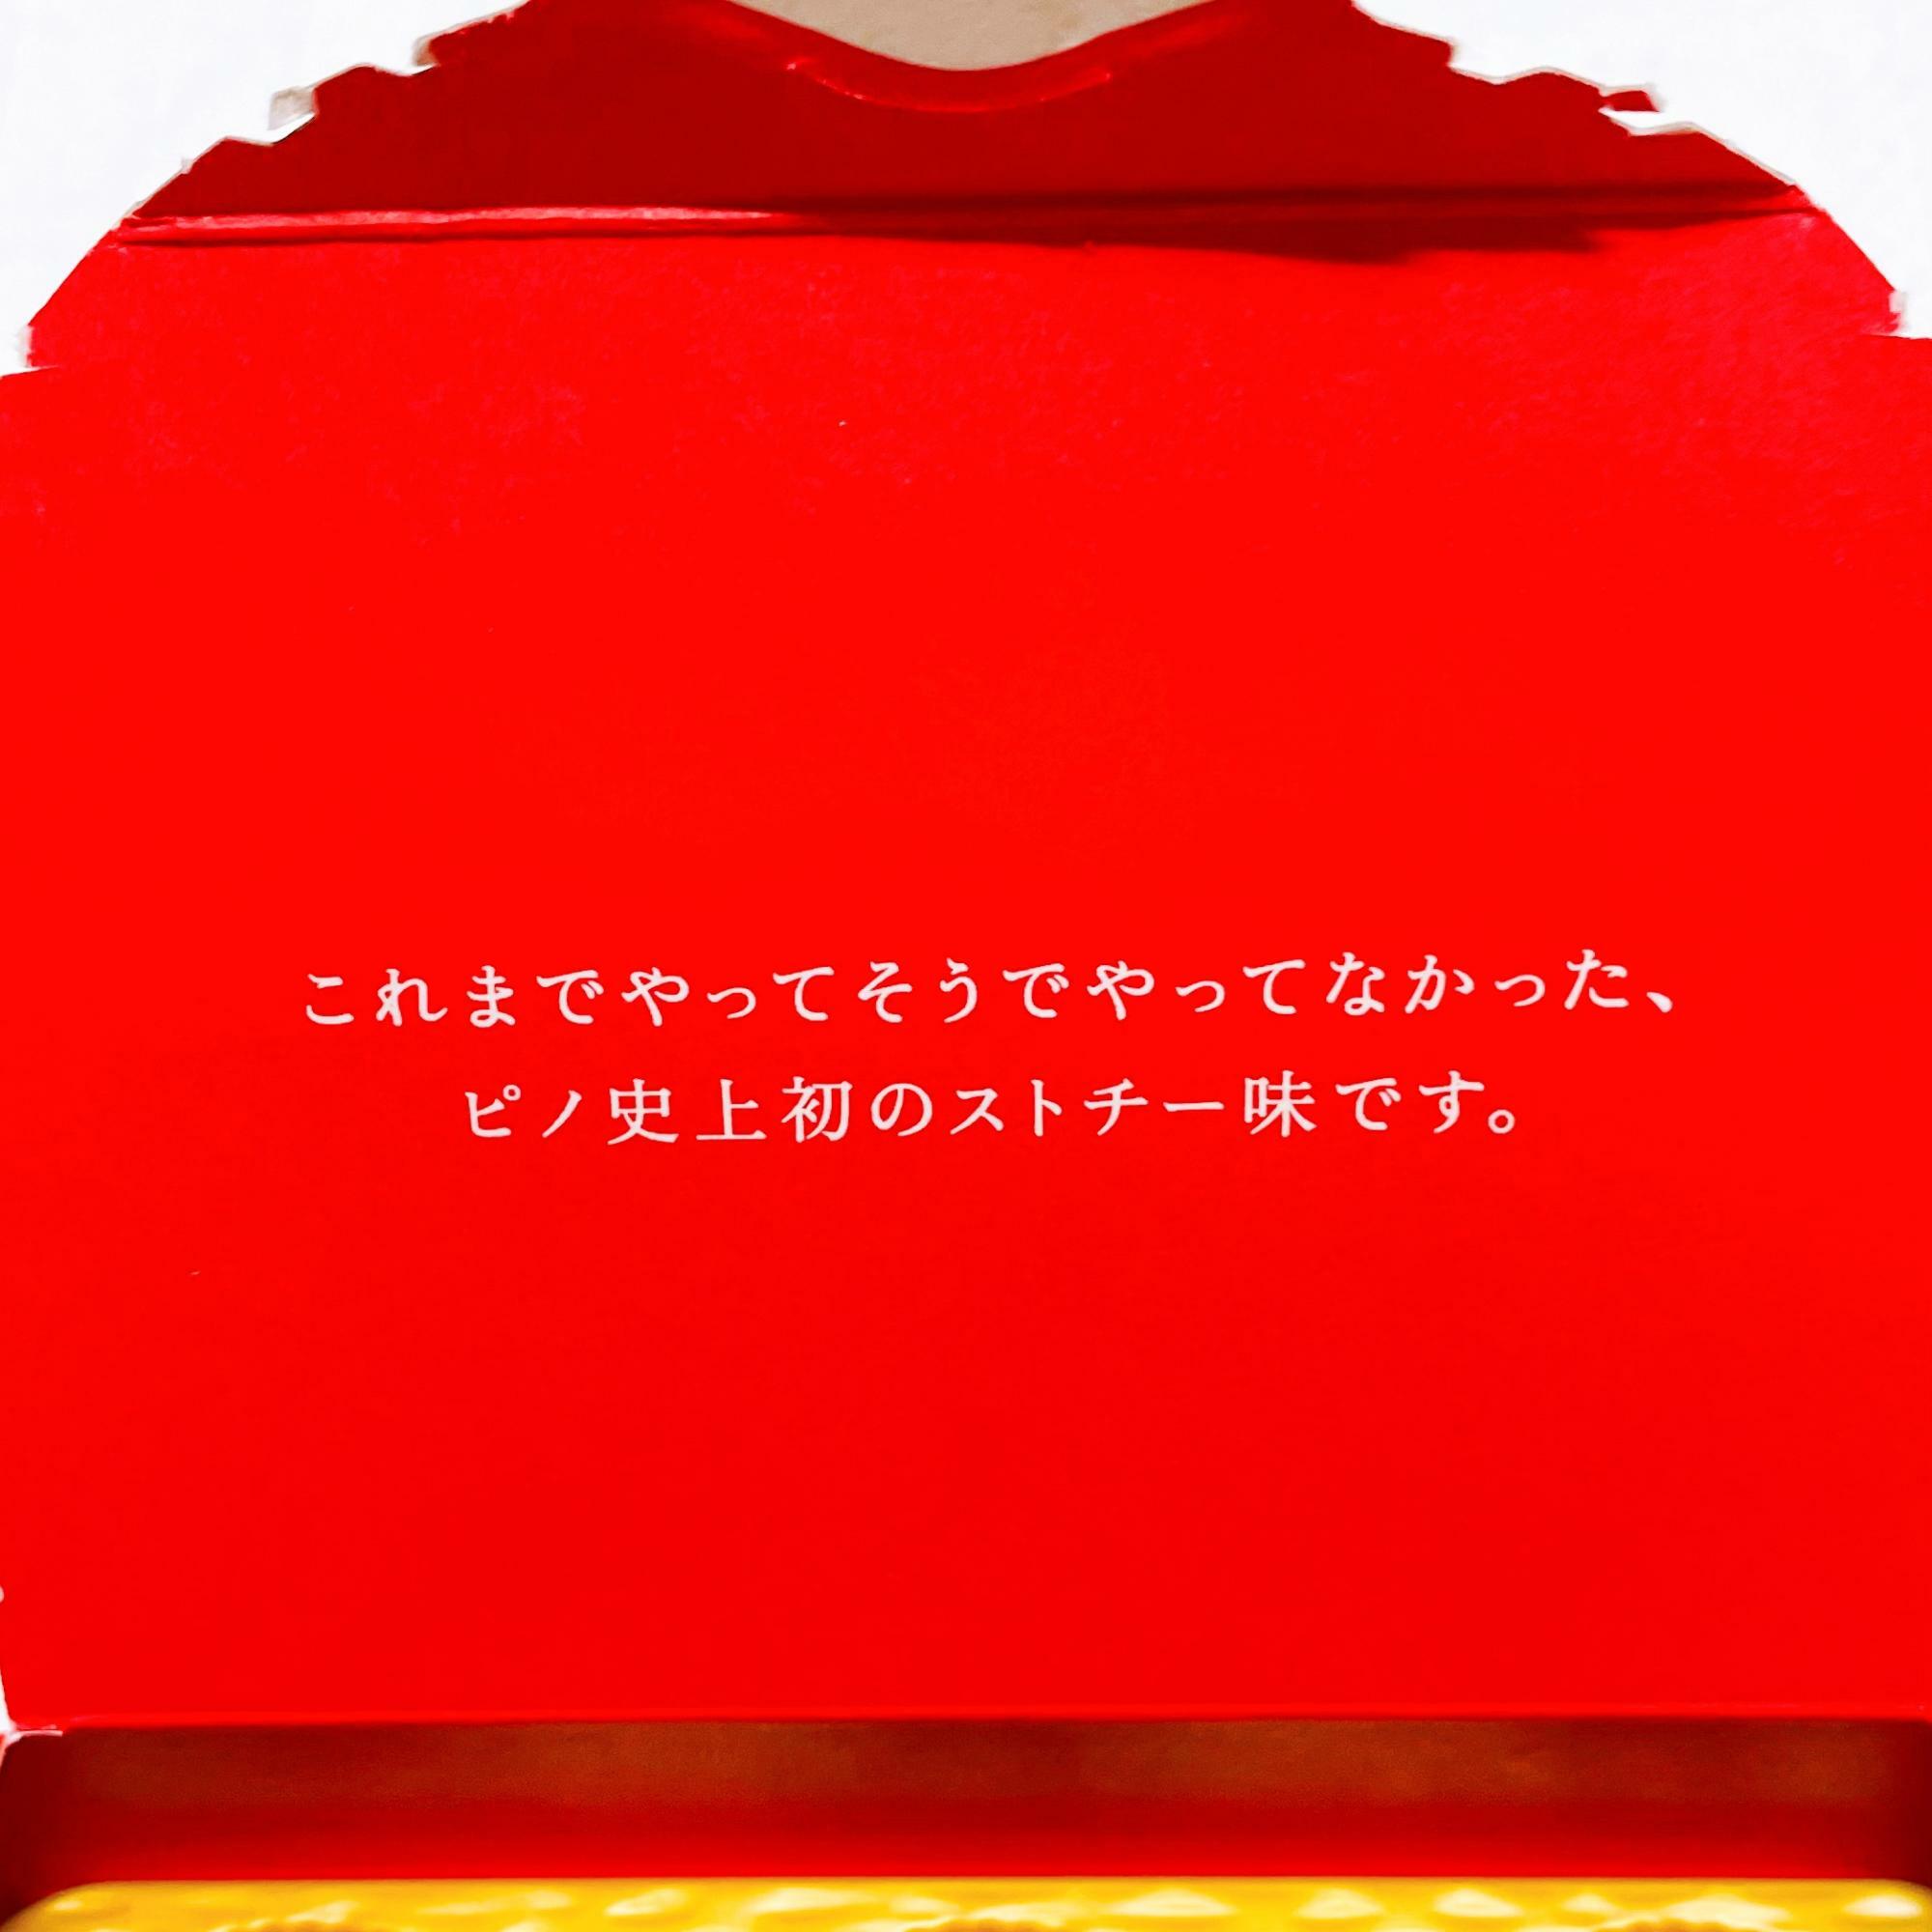 【コンビニエンスストア】ピノ　ストロベリーチーズケーキ